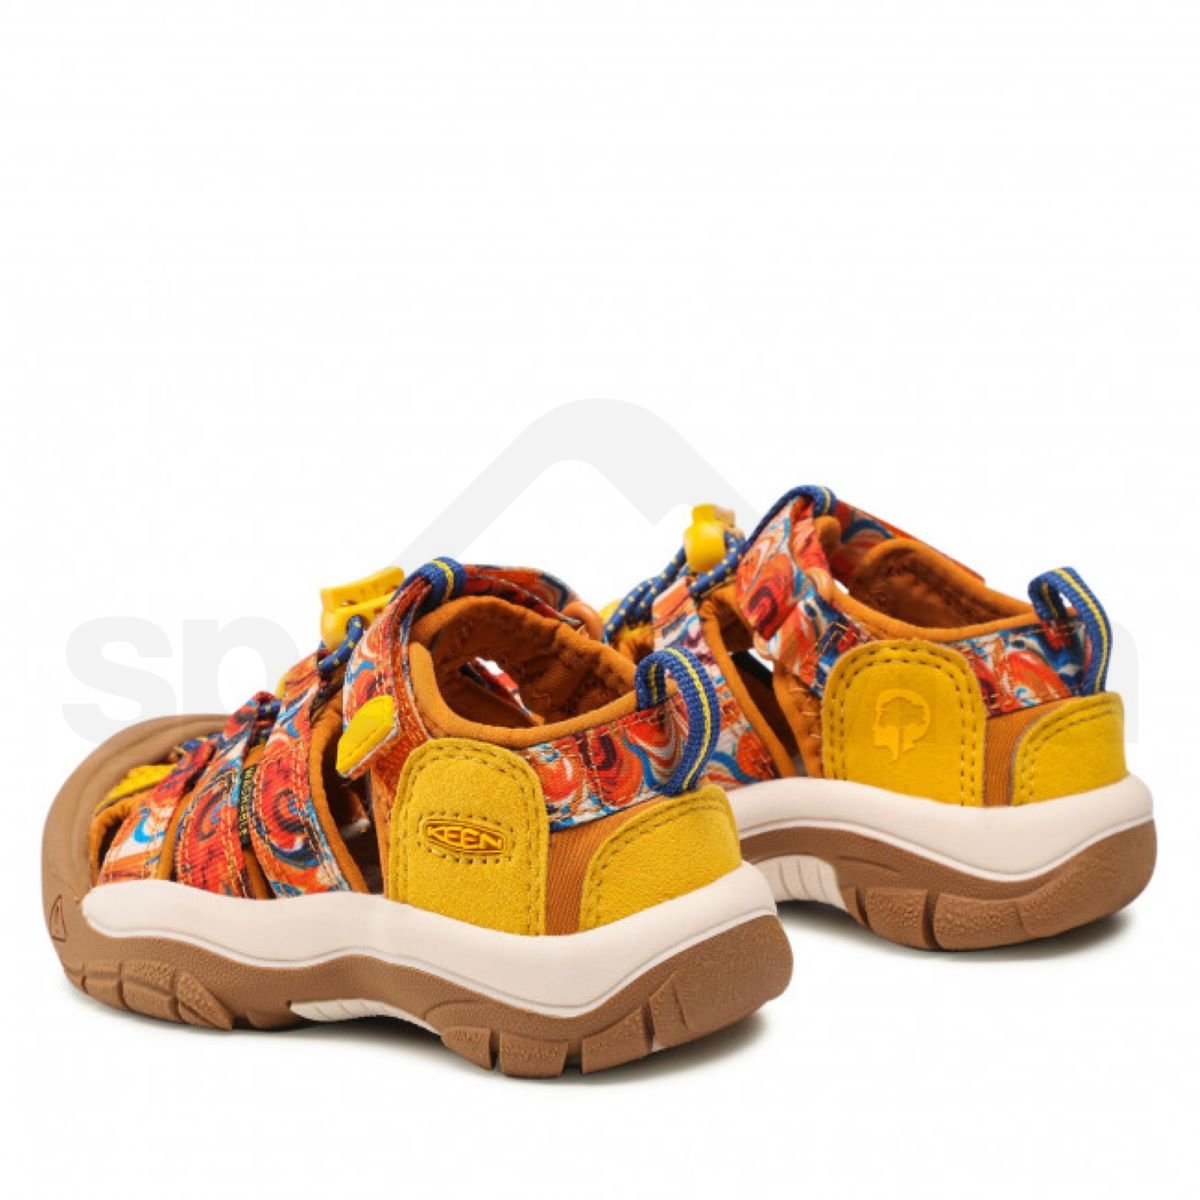 Obuv - sandály Keen Newport H2 Kids - oranžová/žlutá